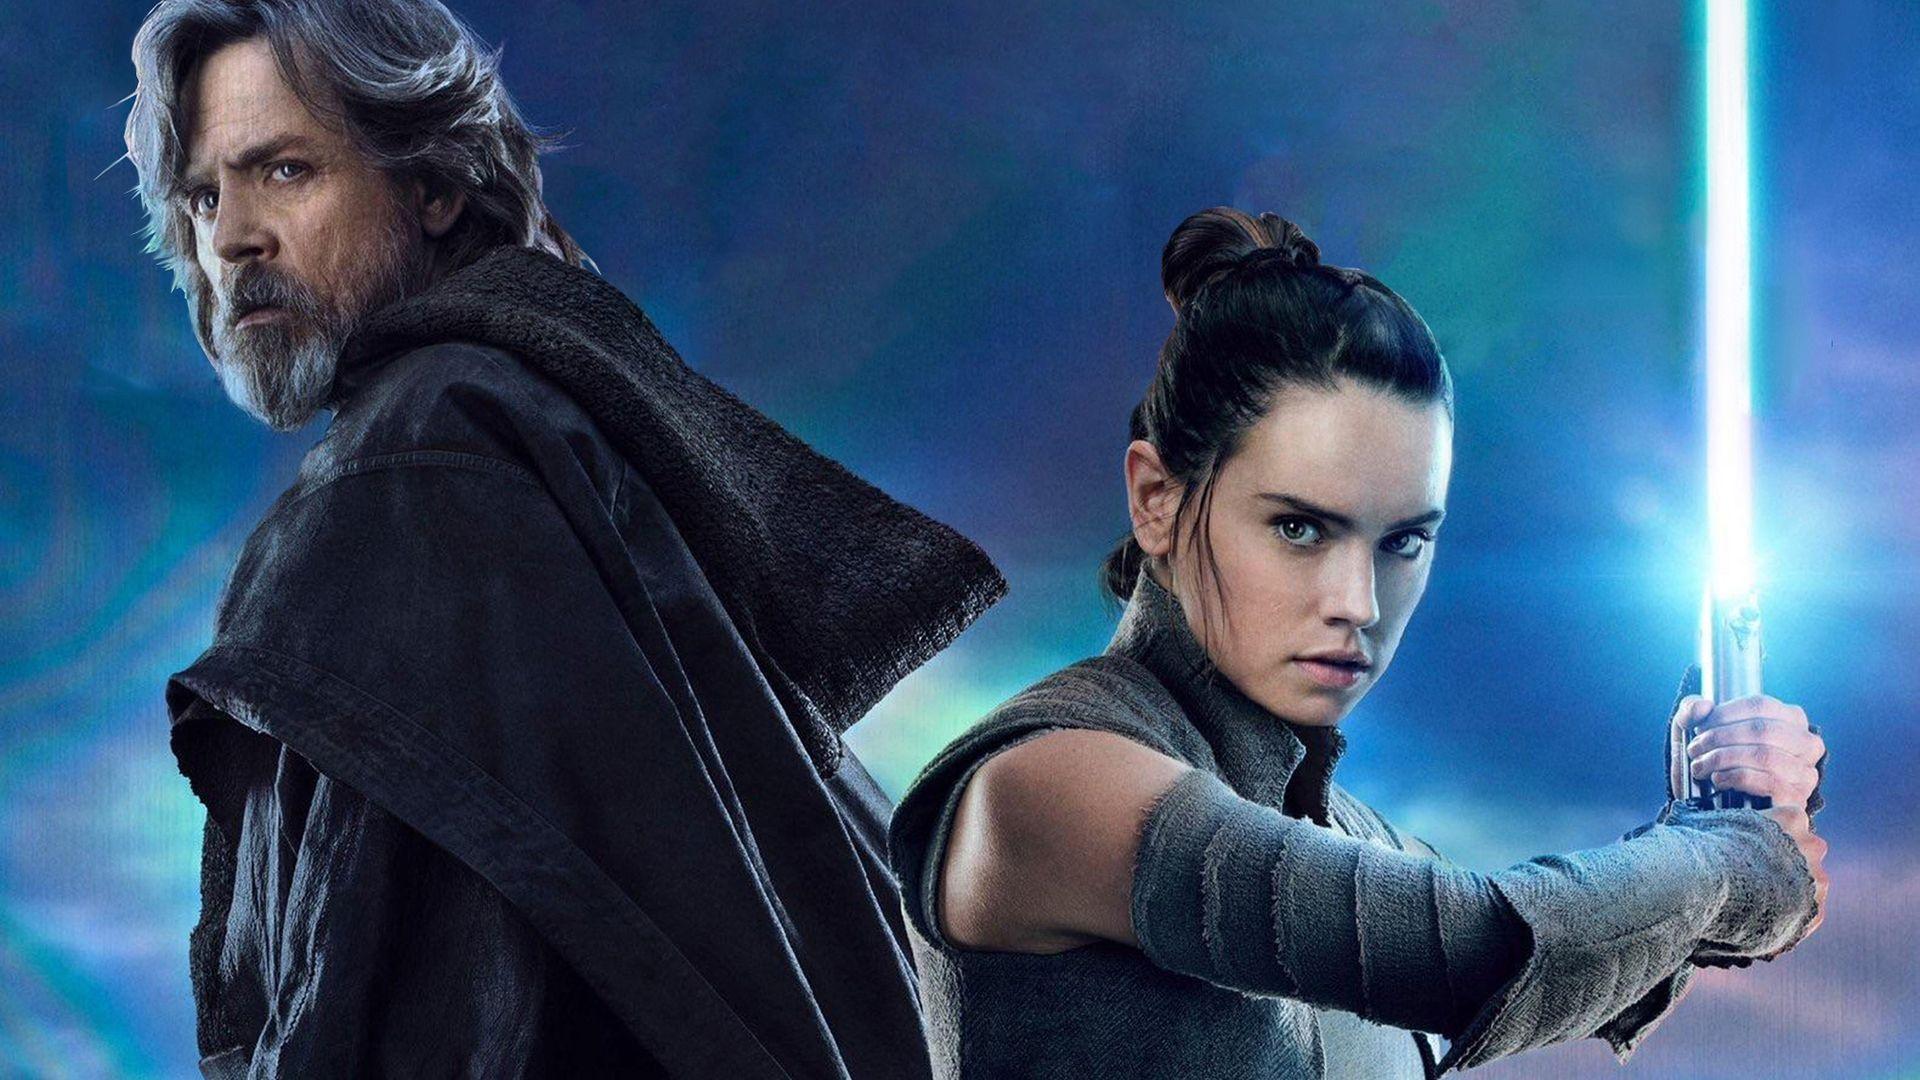 HD Luke Skywalker and Rey Star Wars: The Last Jedi